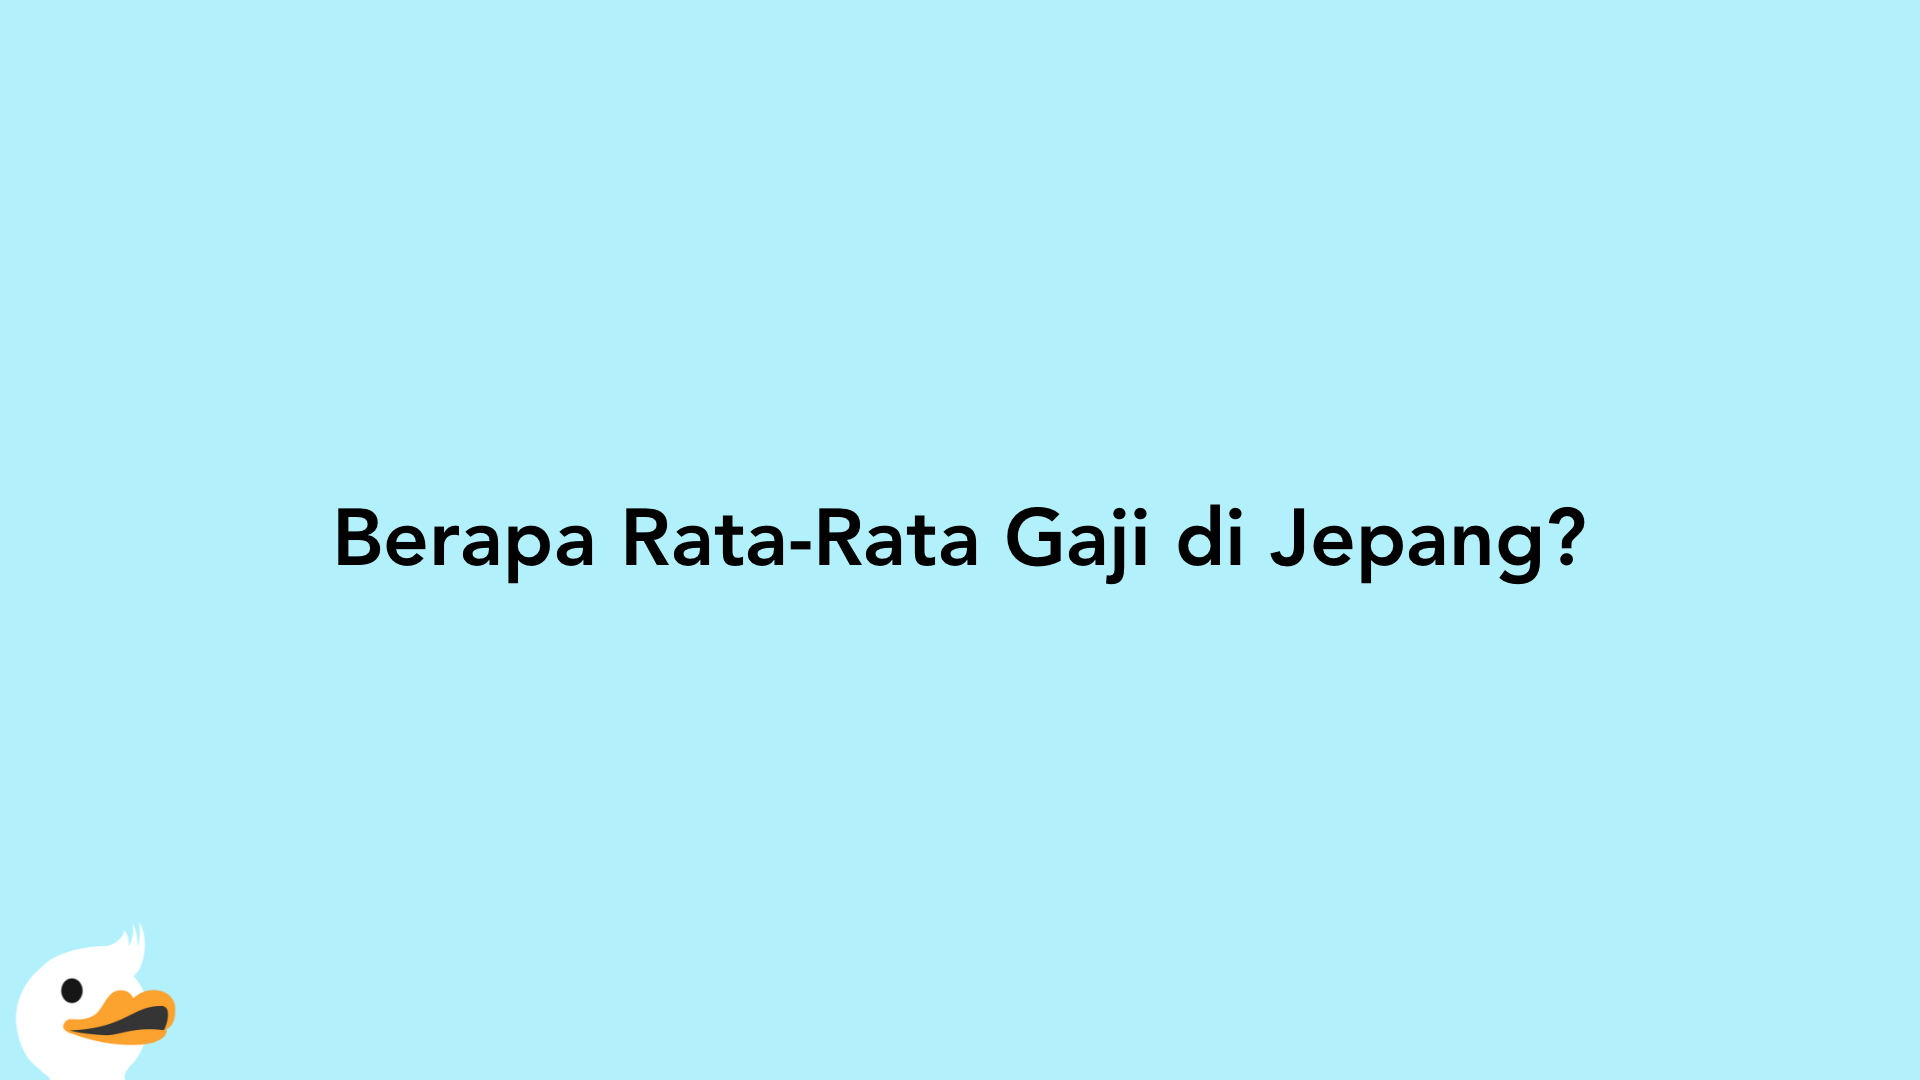 Berapa Rata-Rata Gaji di Jepang?